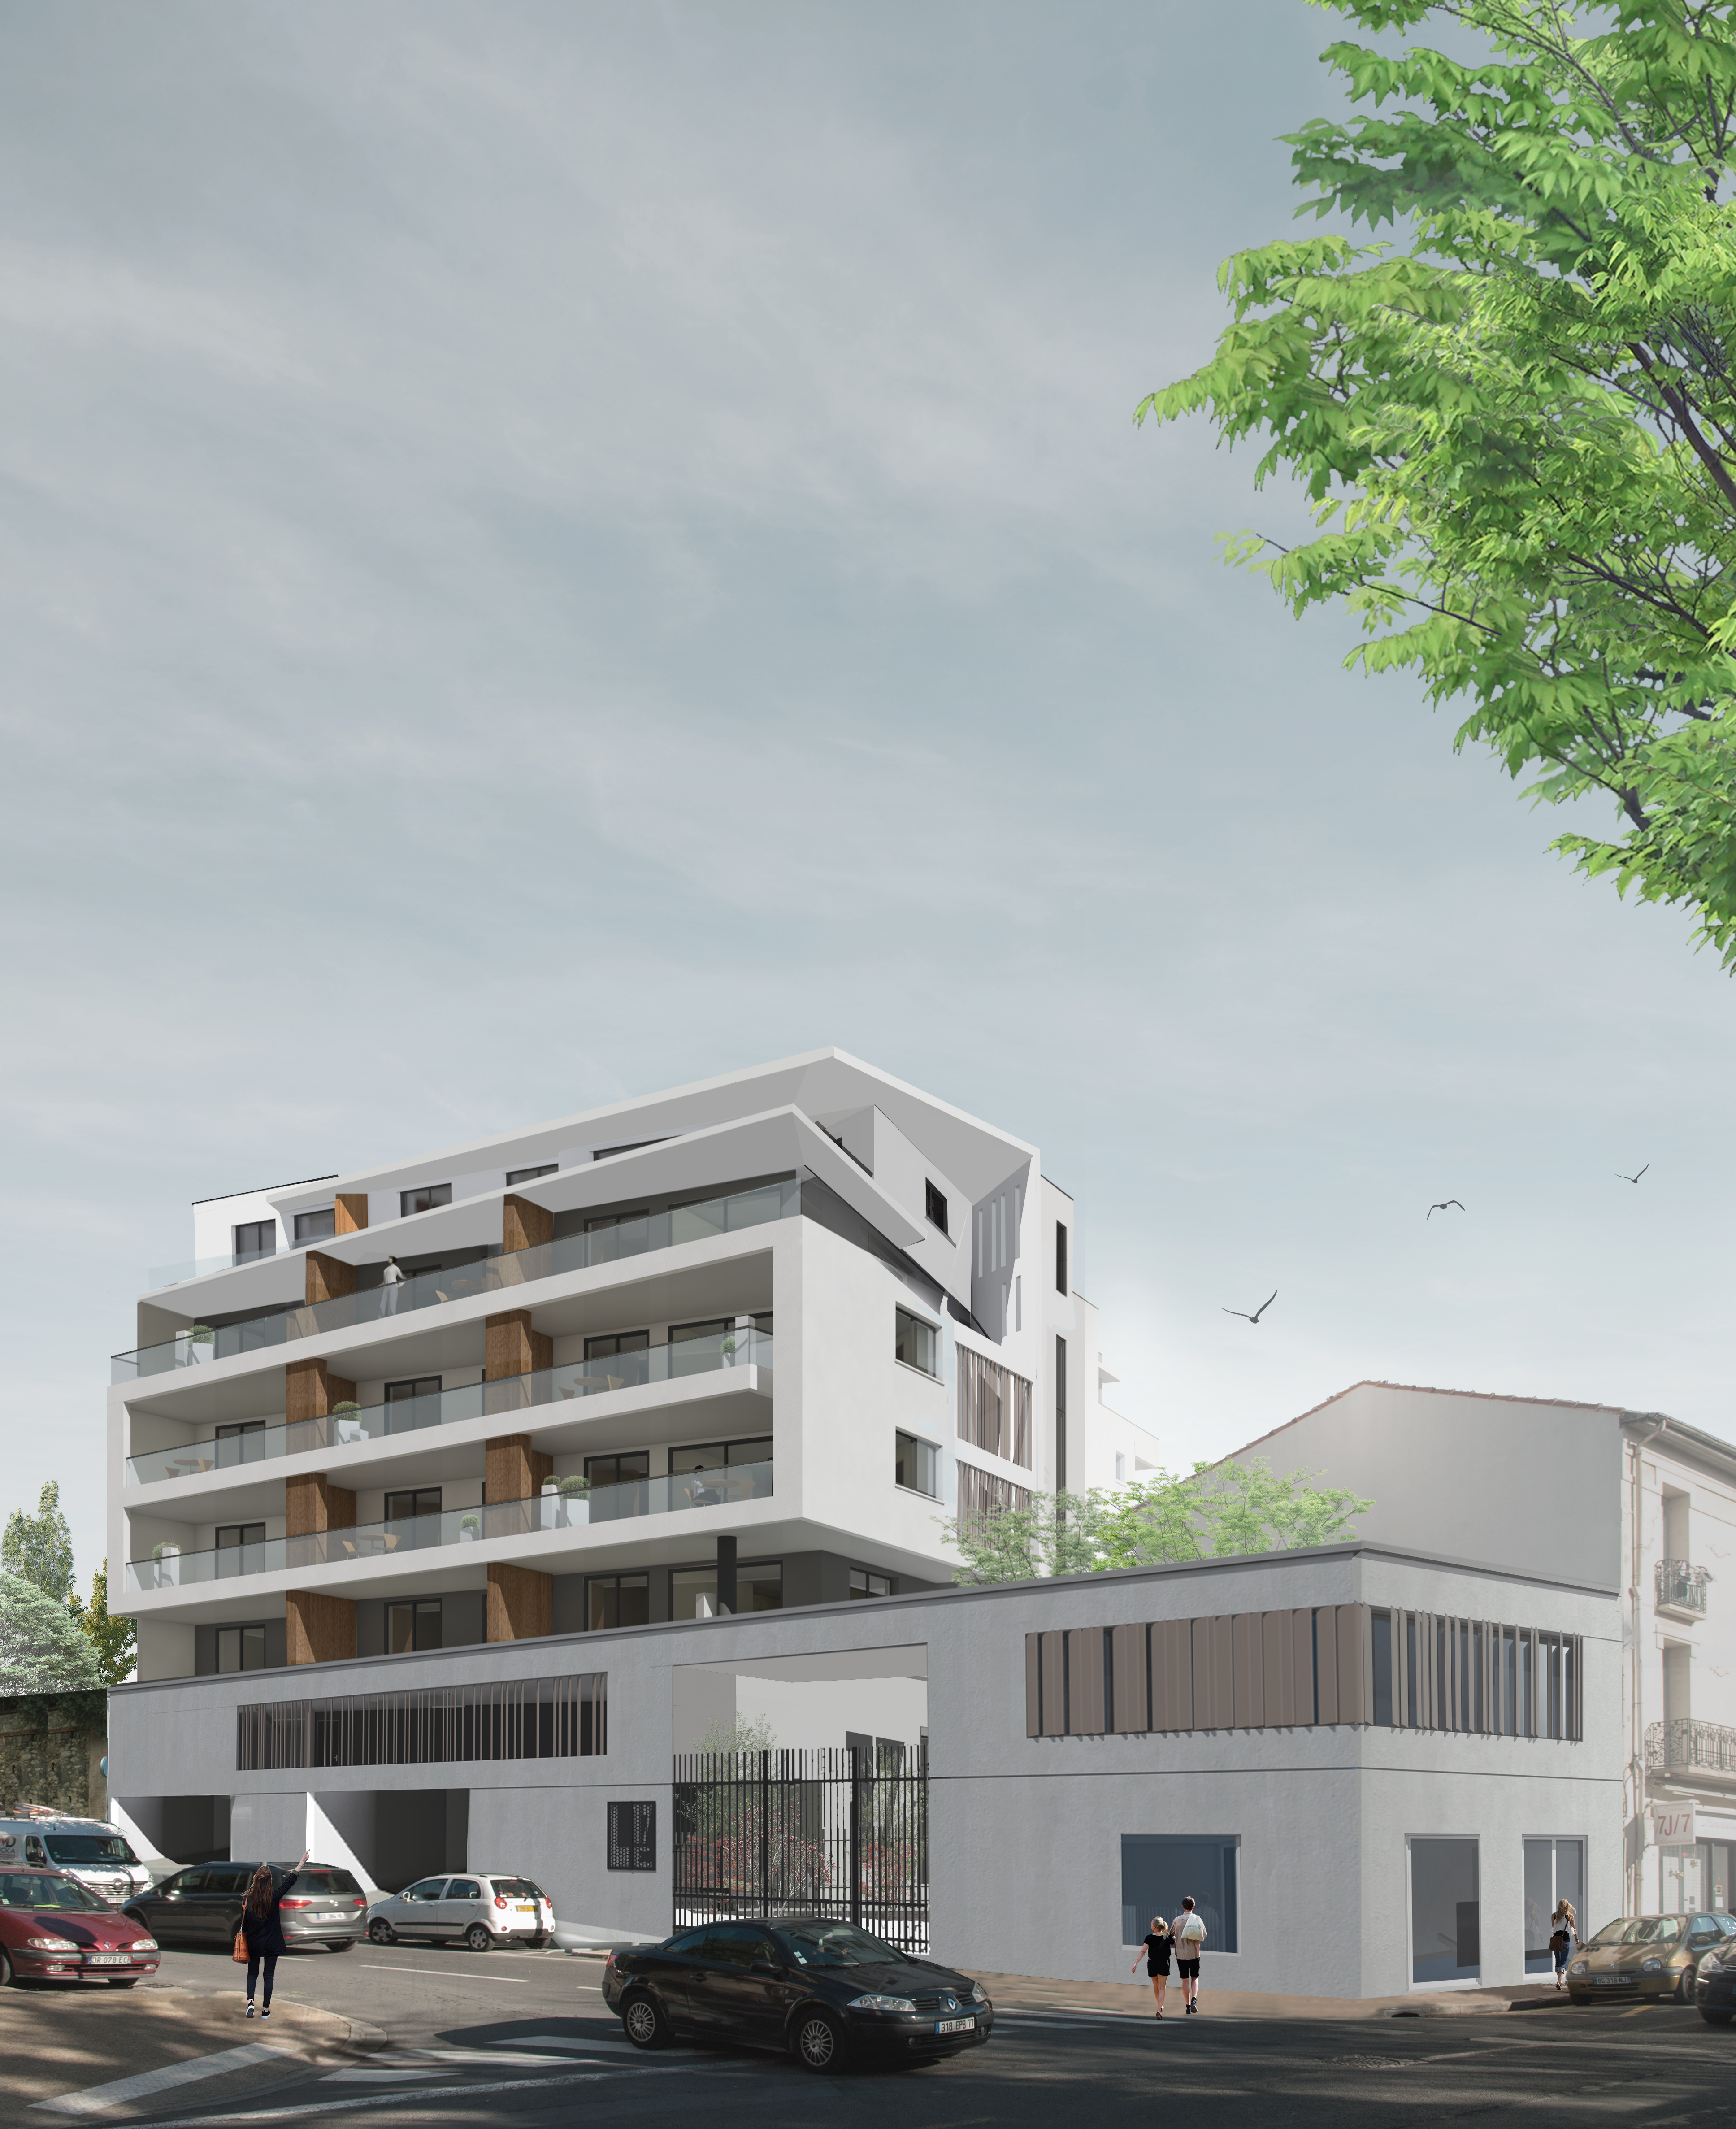 le 17
architecture 
béziers
agence rolland & associés 
herault
logement
promotion
appartement
projet 
architecte
